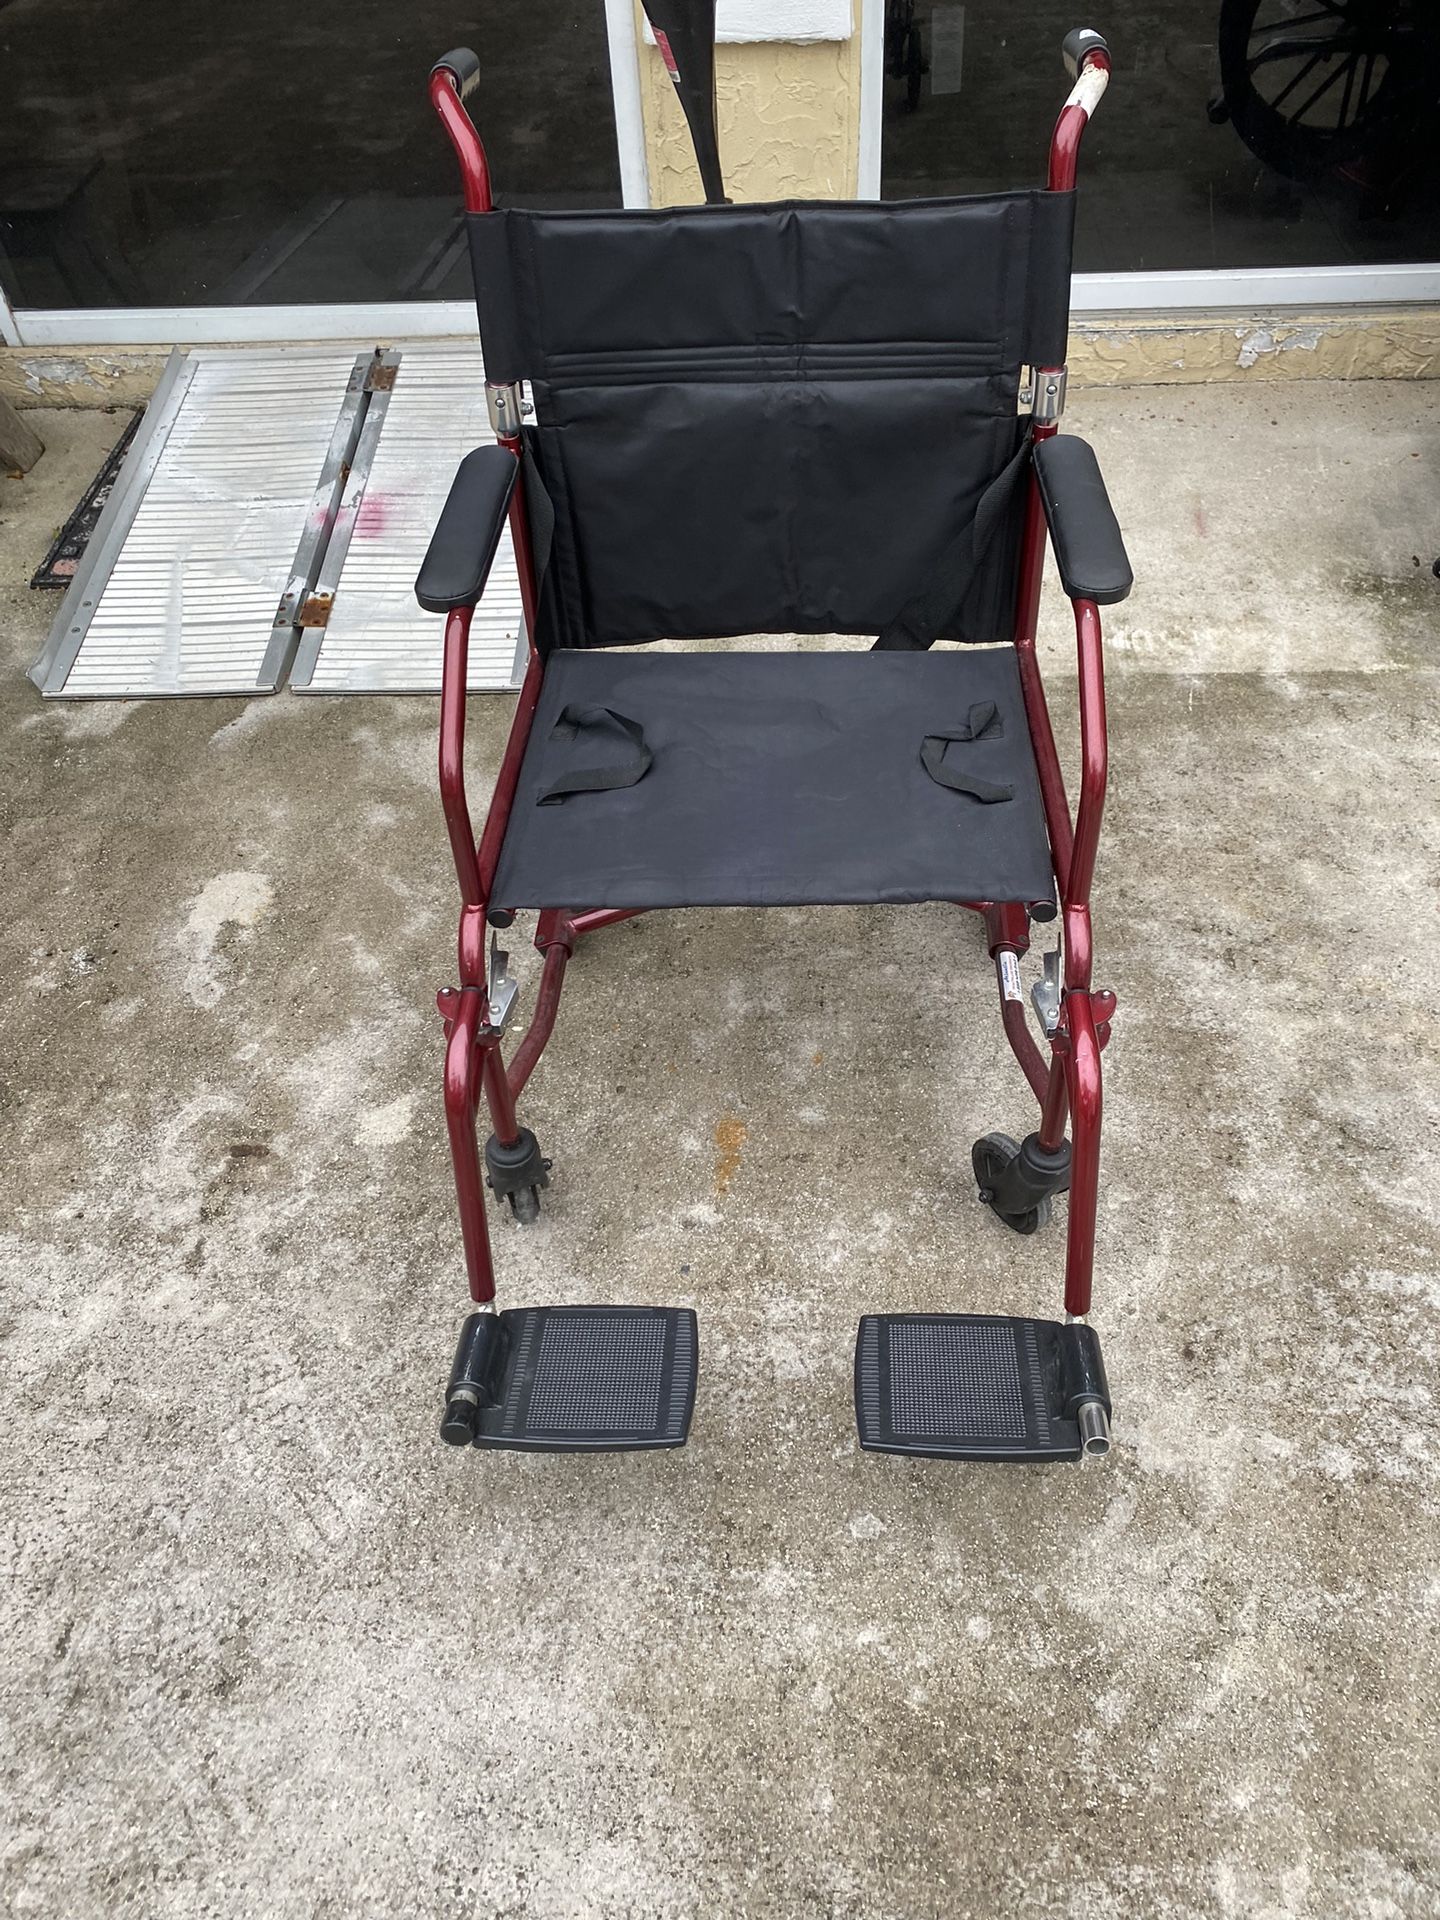 Transport Chair, Ultralight Weight 19 Pounds